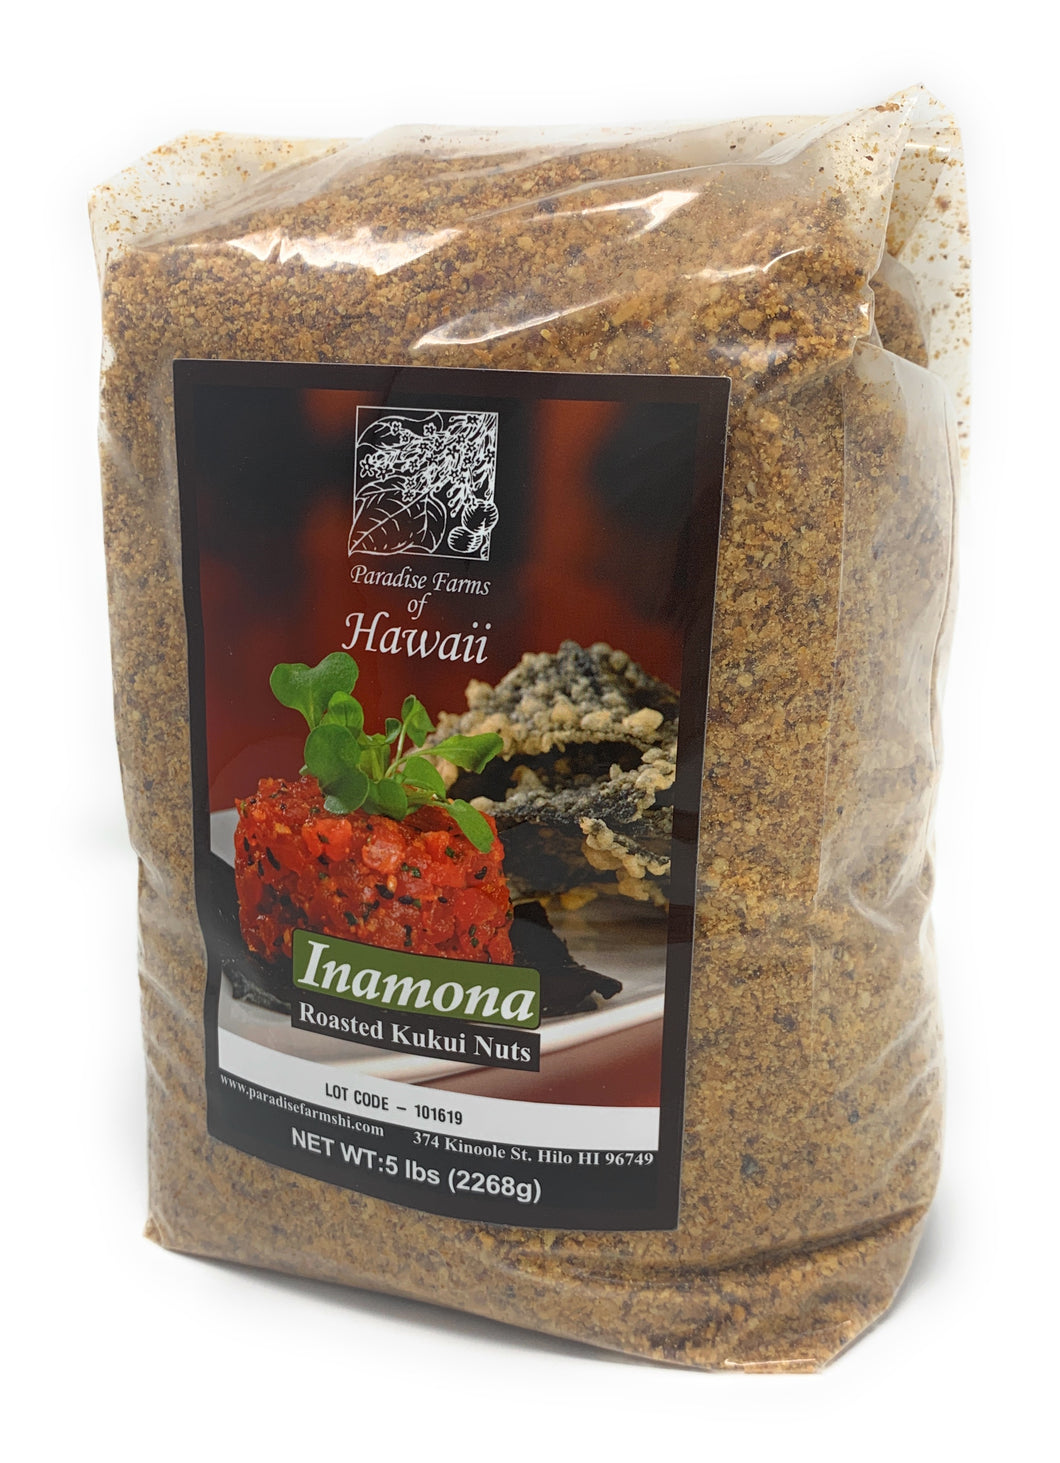 Paradise Farms of Hawaii - Inamona Roasted Kukui Nuts (2) ea 5 lb bags - 10 lb Total - Alii Snack Company